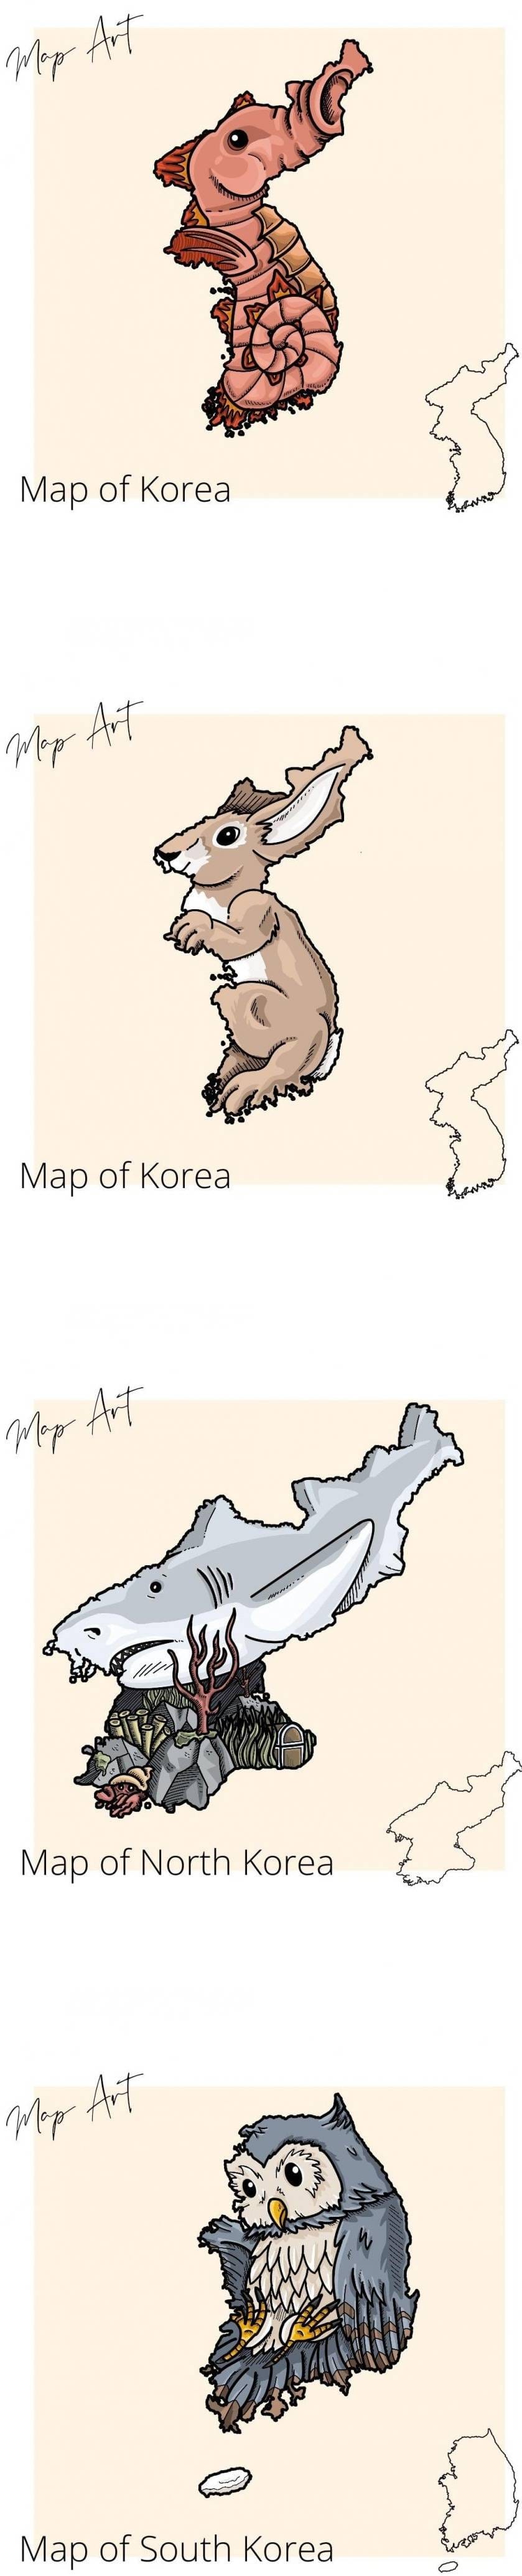 외국에서 보는 한국 국토 모양